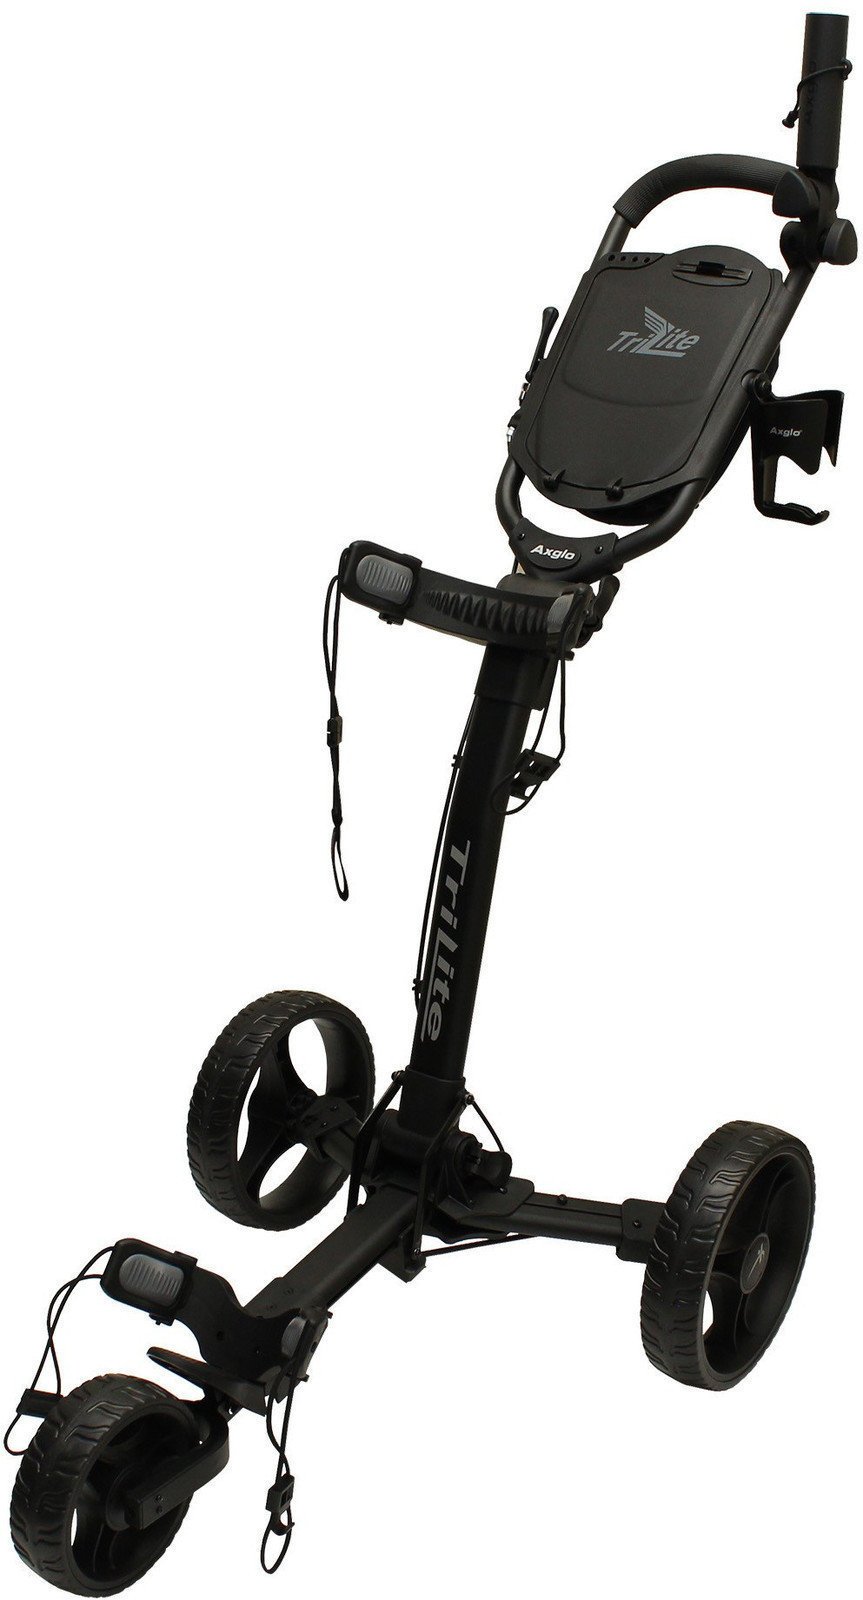 Manuální golfové vozíky Axglo TriLite Black/Black Manuální golfové vozíky